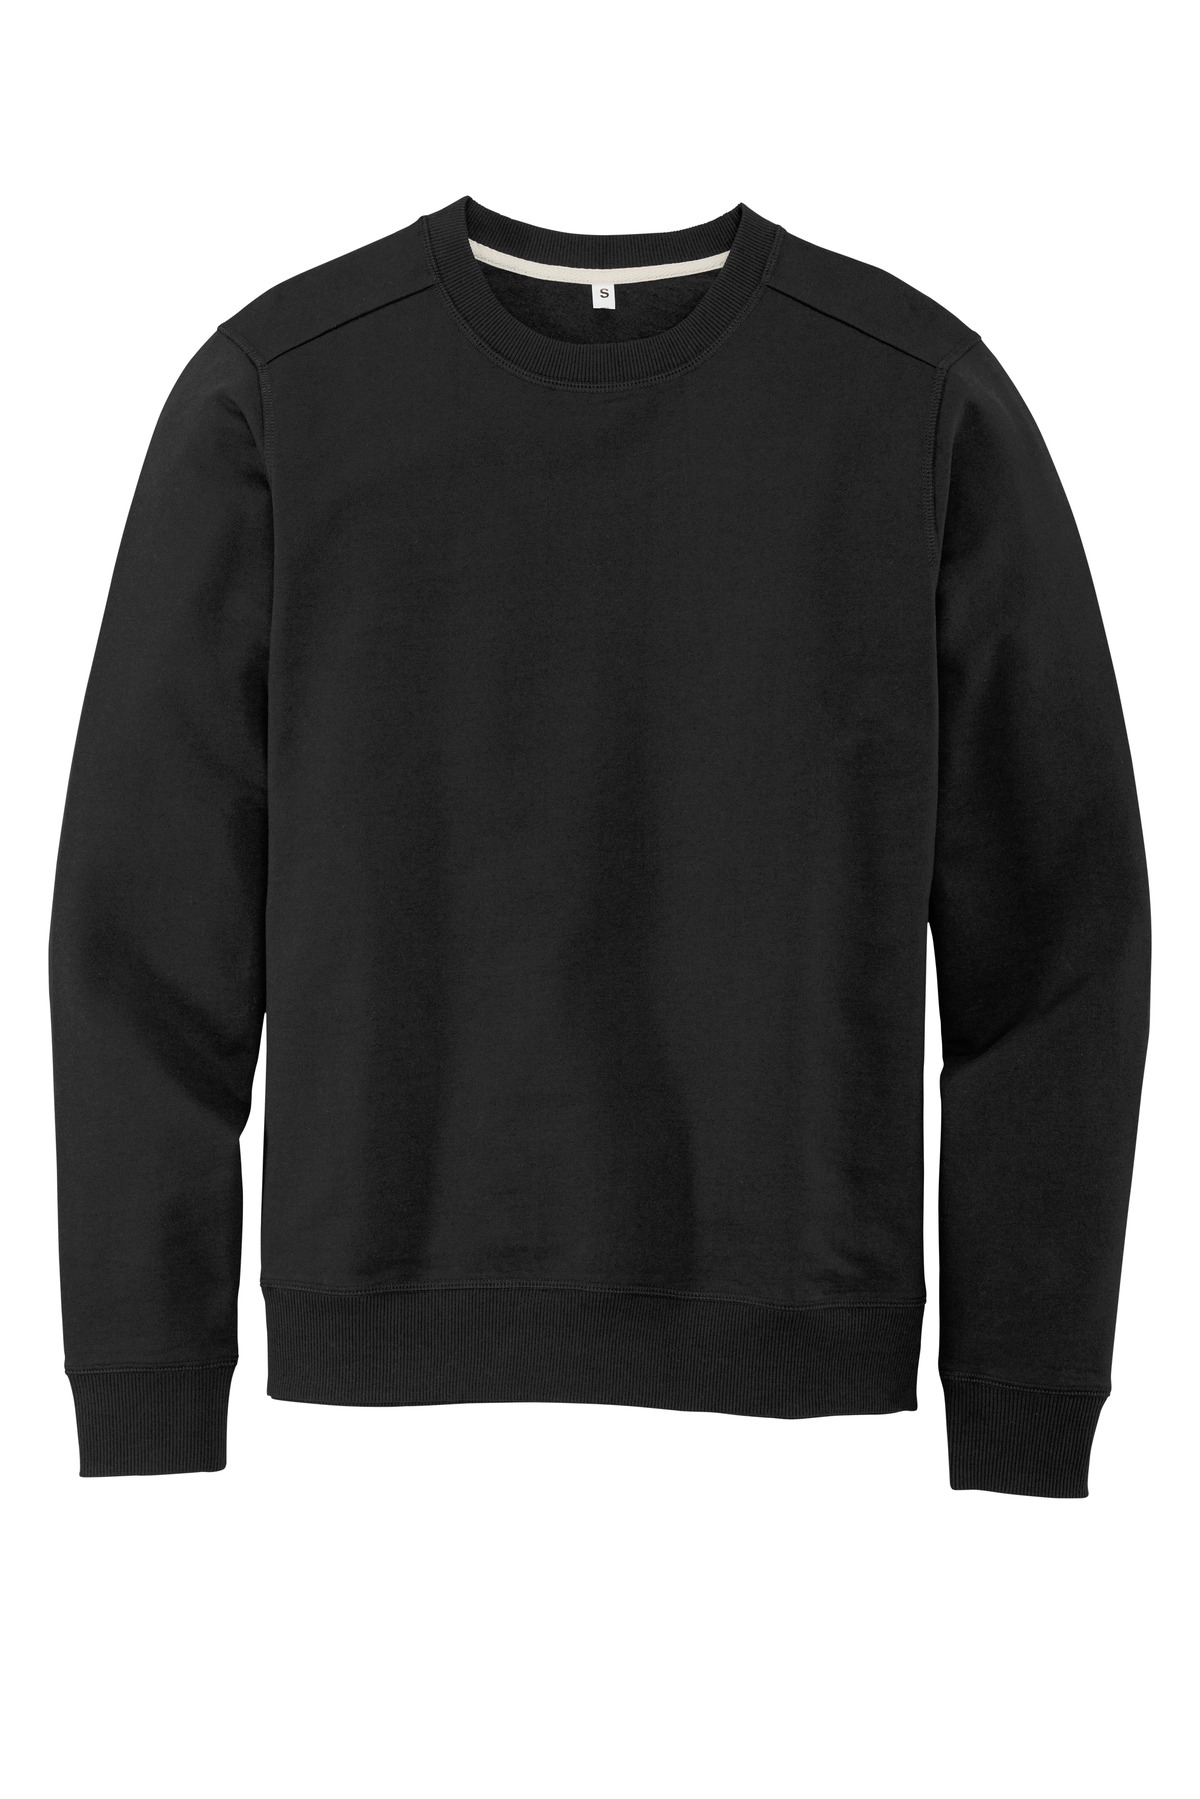 Sweatshirts/Fleece